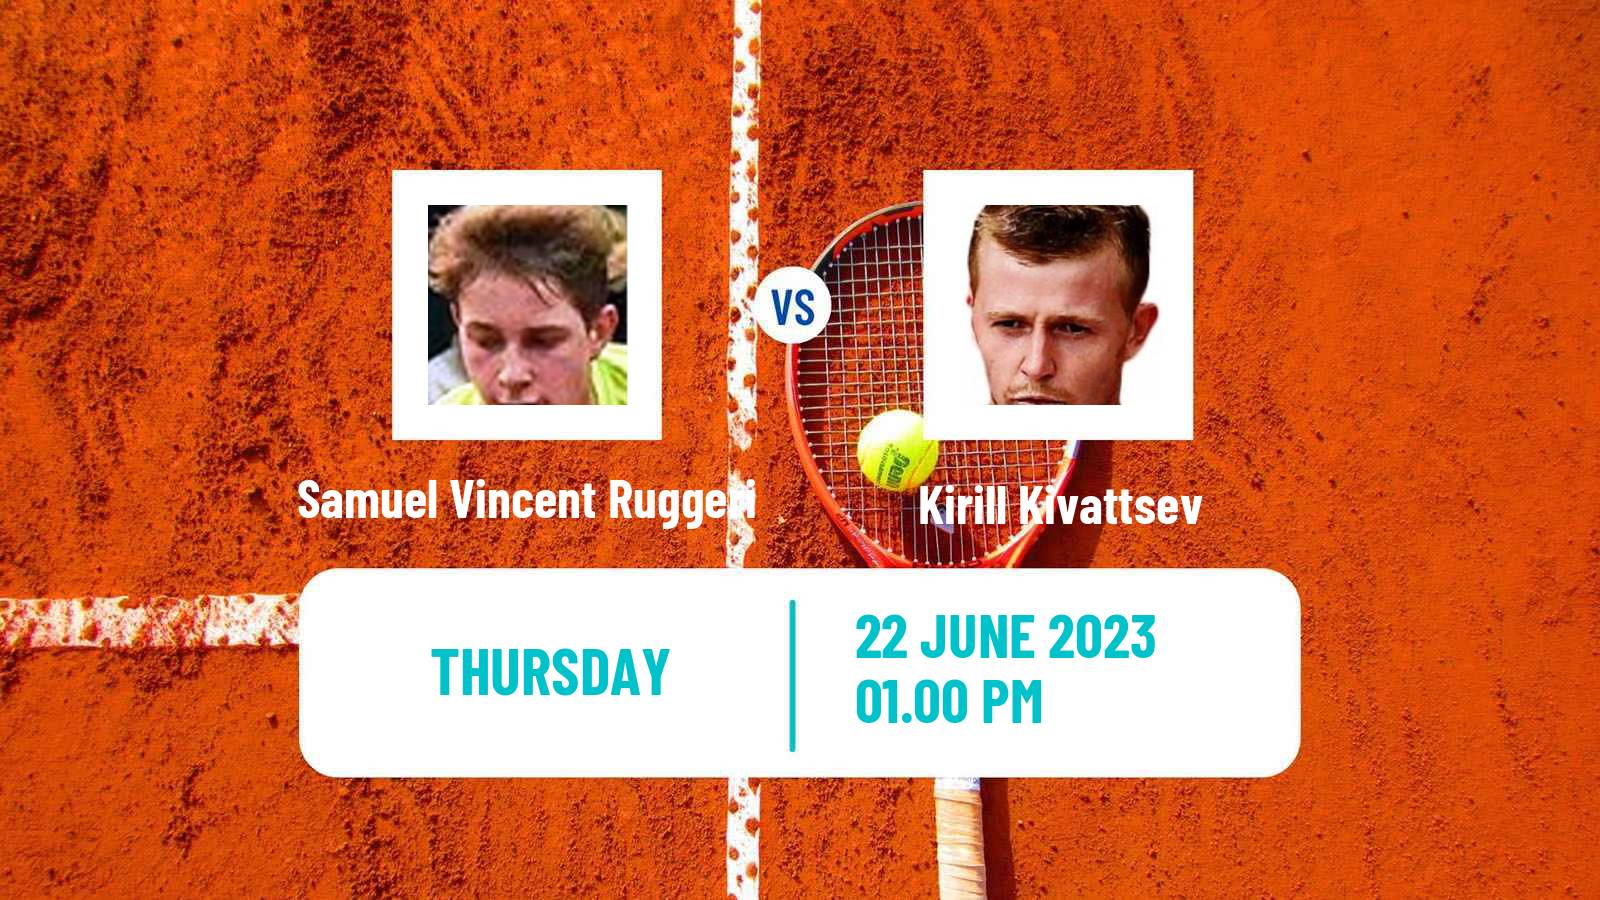 Tennis ITF M25 Cattolica Men Samuel Vincent Ruggeri - Kirill Kivattsev